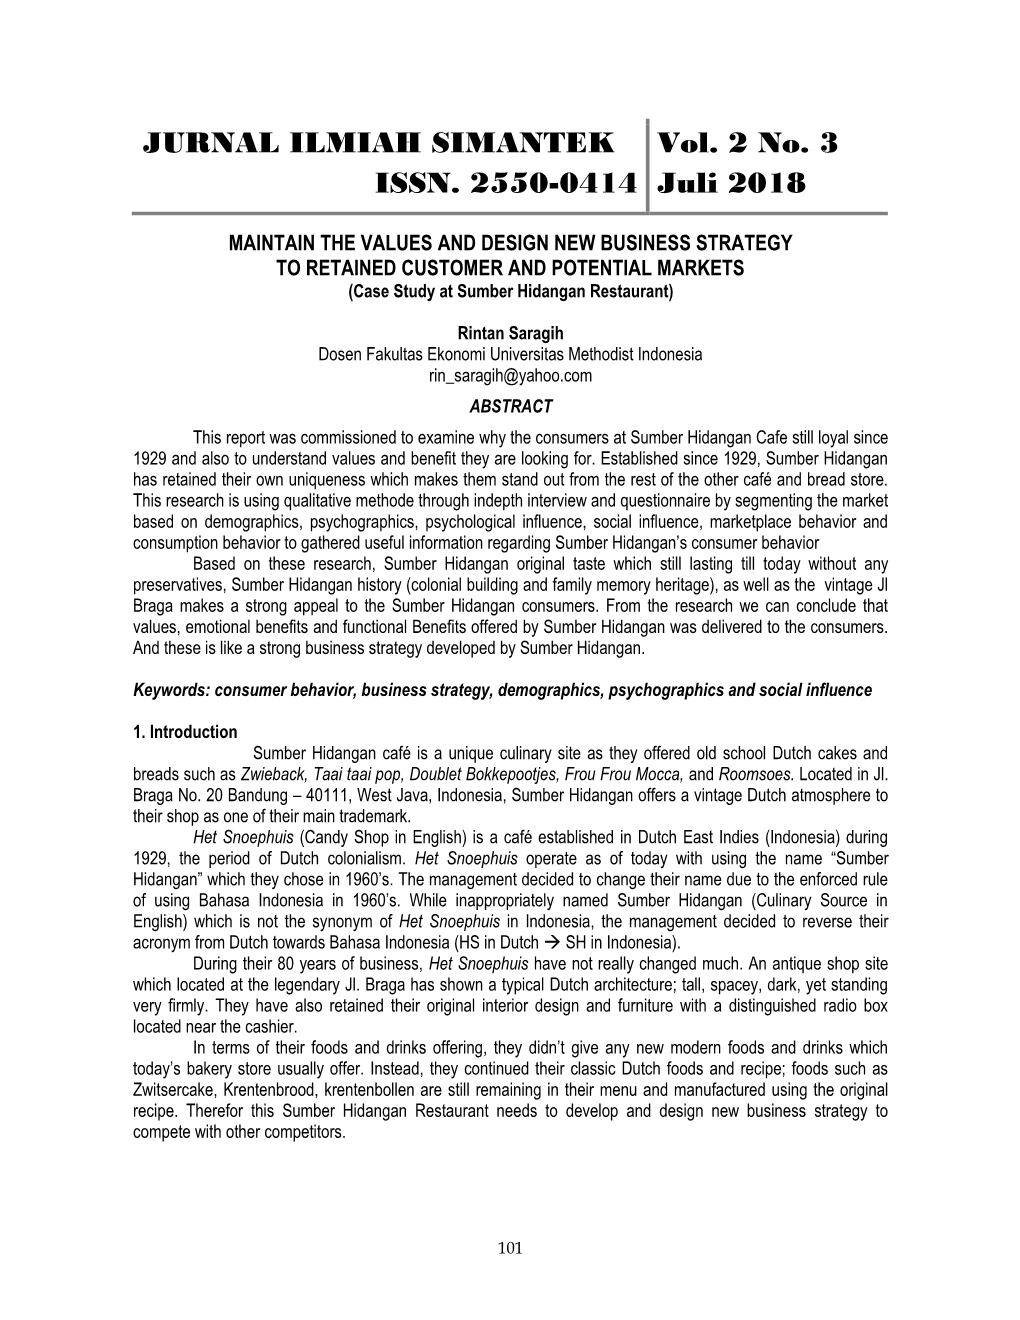 JURNAL ILMIAH SIMANTEK ISSN. 2550-0414 Vol. 2 No. 3 Juli 2018